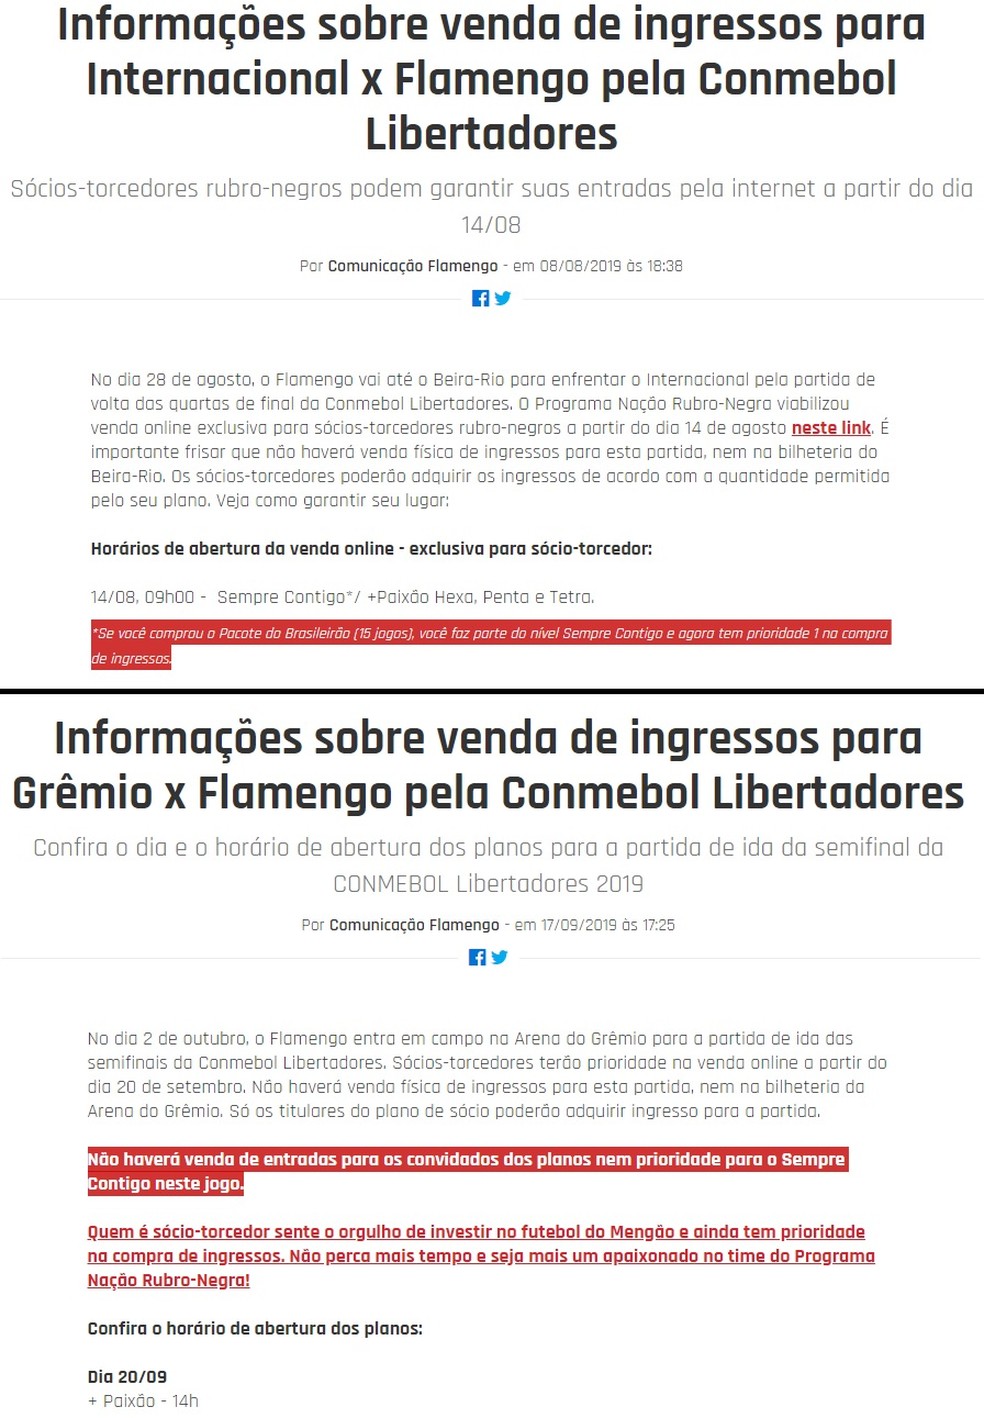 NotÃ­cias no site oficial tratam de forma diferente prioridade do pacote contra Inter e GrÃªmio â€” Foto: ReproduÃ§Ã£o